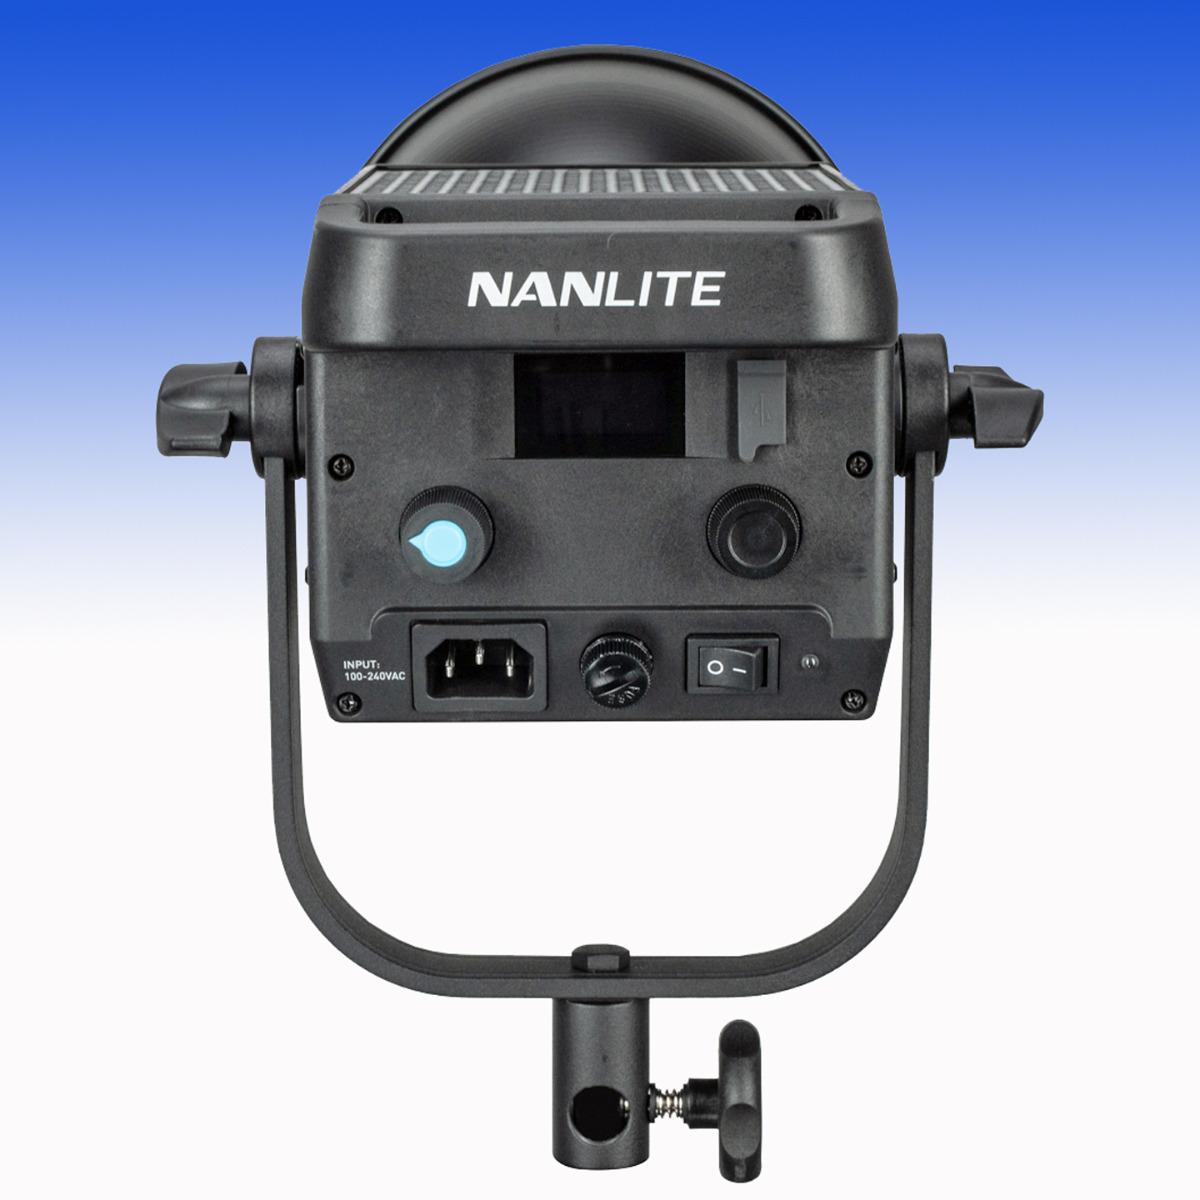 NANLITE Beleuchtungsset FS200 Dual-Kit LED (NL-FS200-2K) - TIEFSTPREIS !